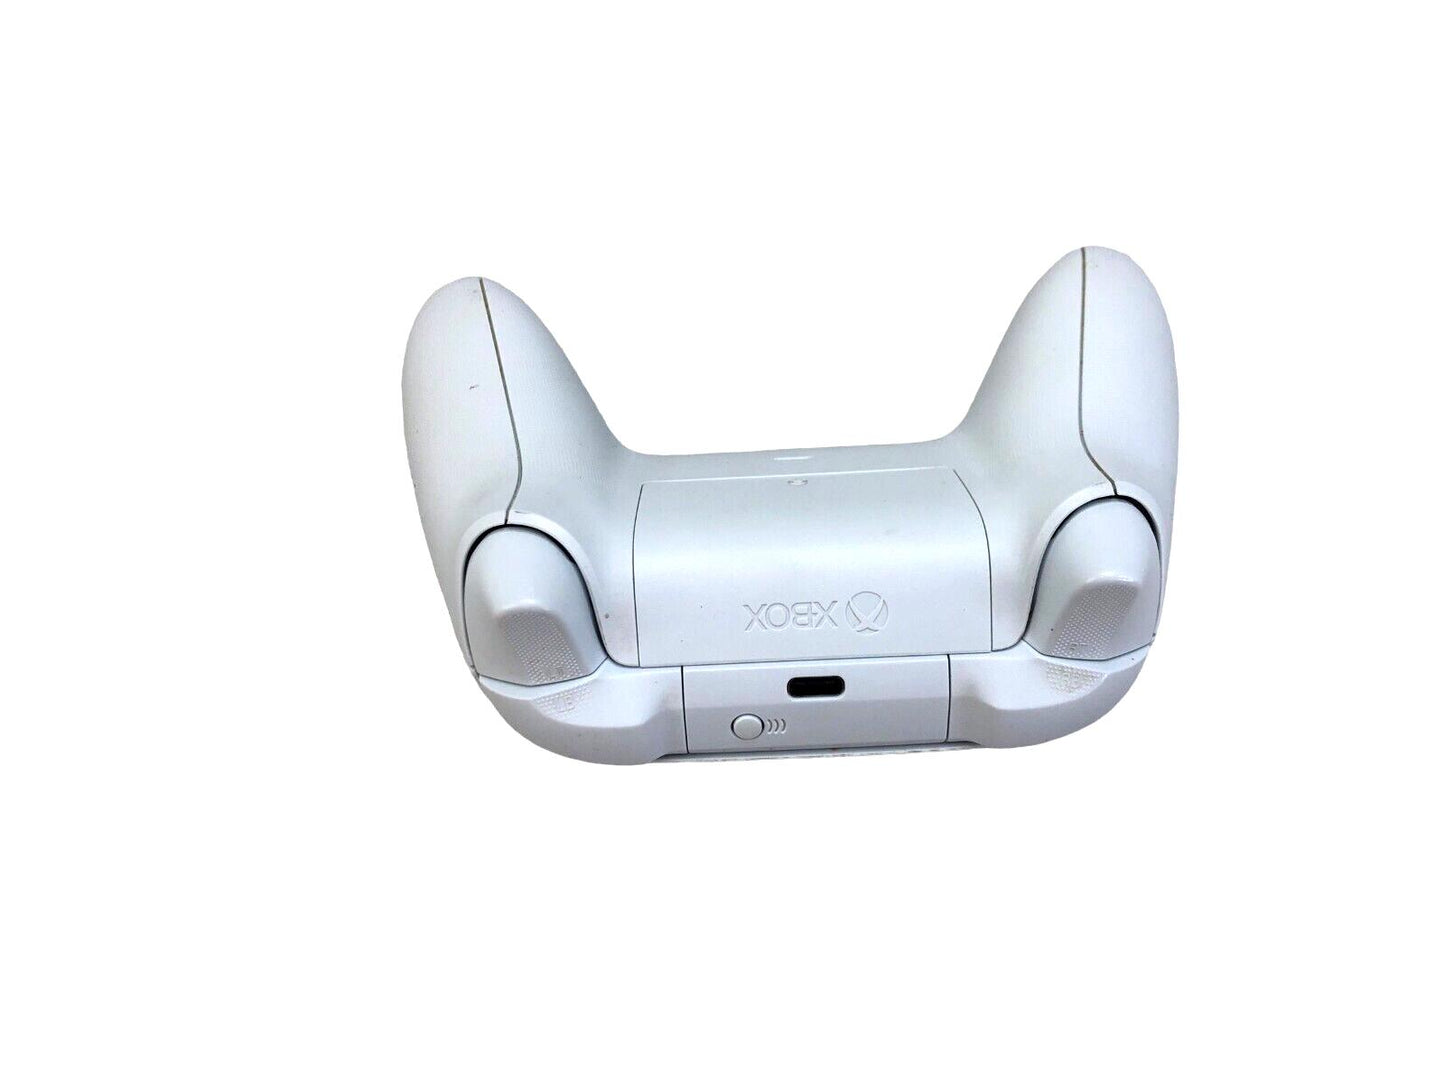 Xbox Series X|S Wireless Controller - Robot White